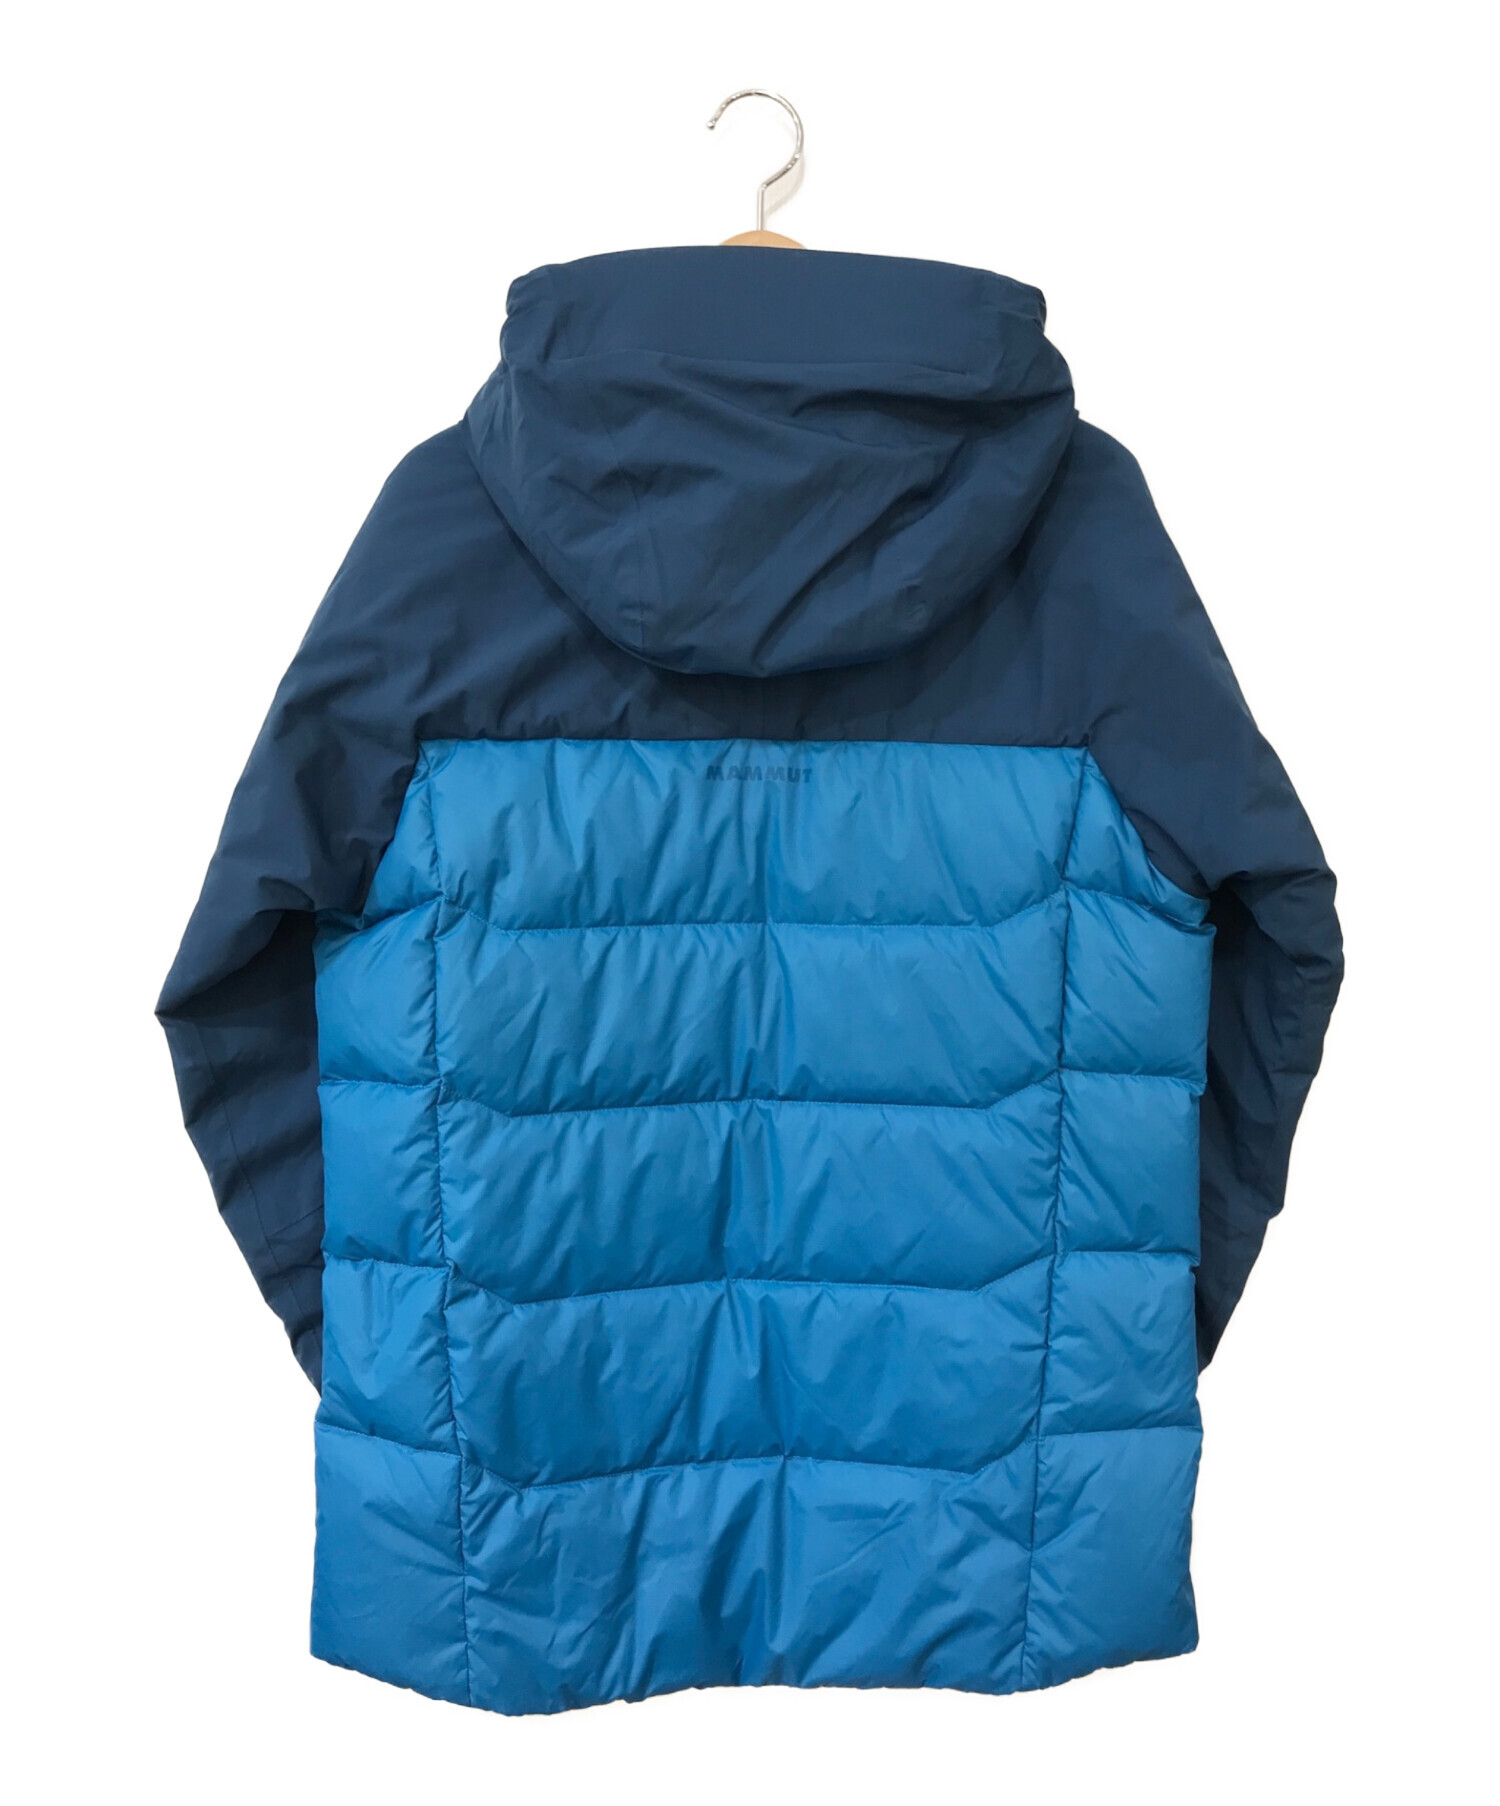 MAMMUT (マムート) ライムプロインハイブリッドフーデッドジャケット ブルー×ネイビー サイズ:M